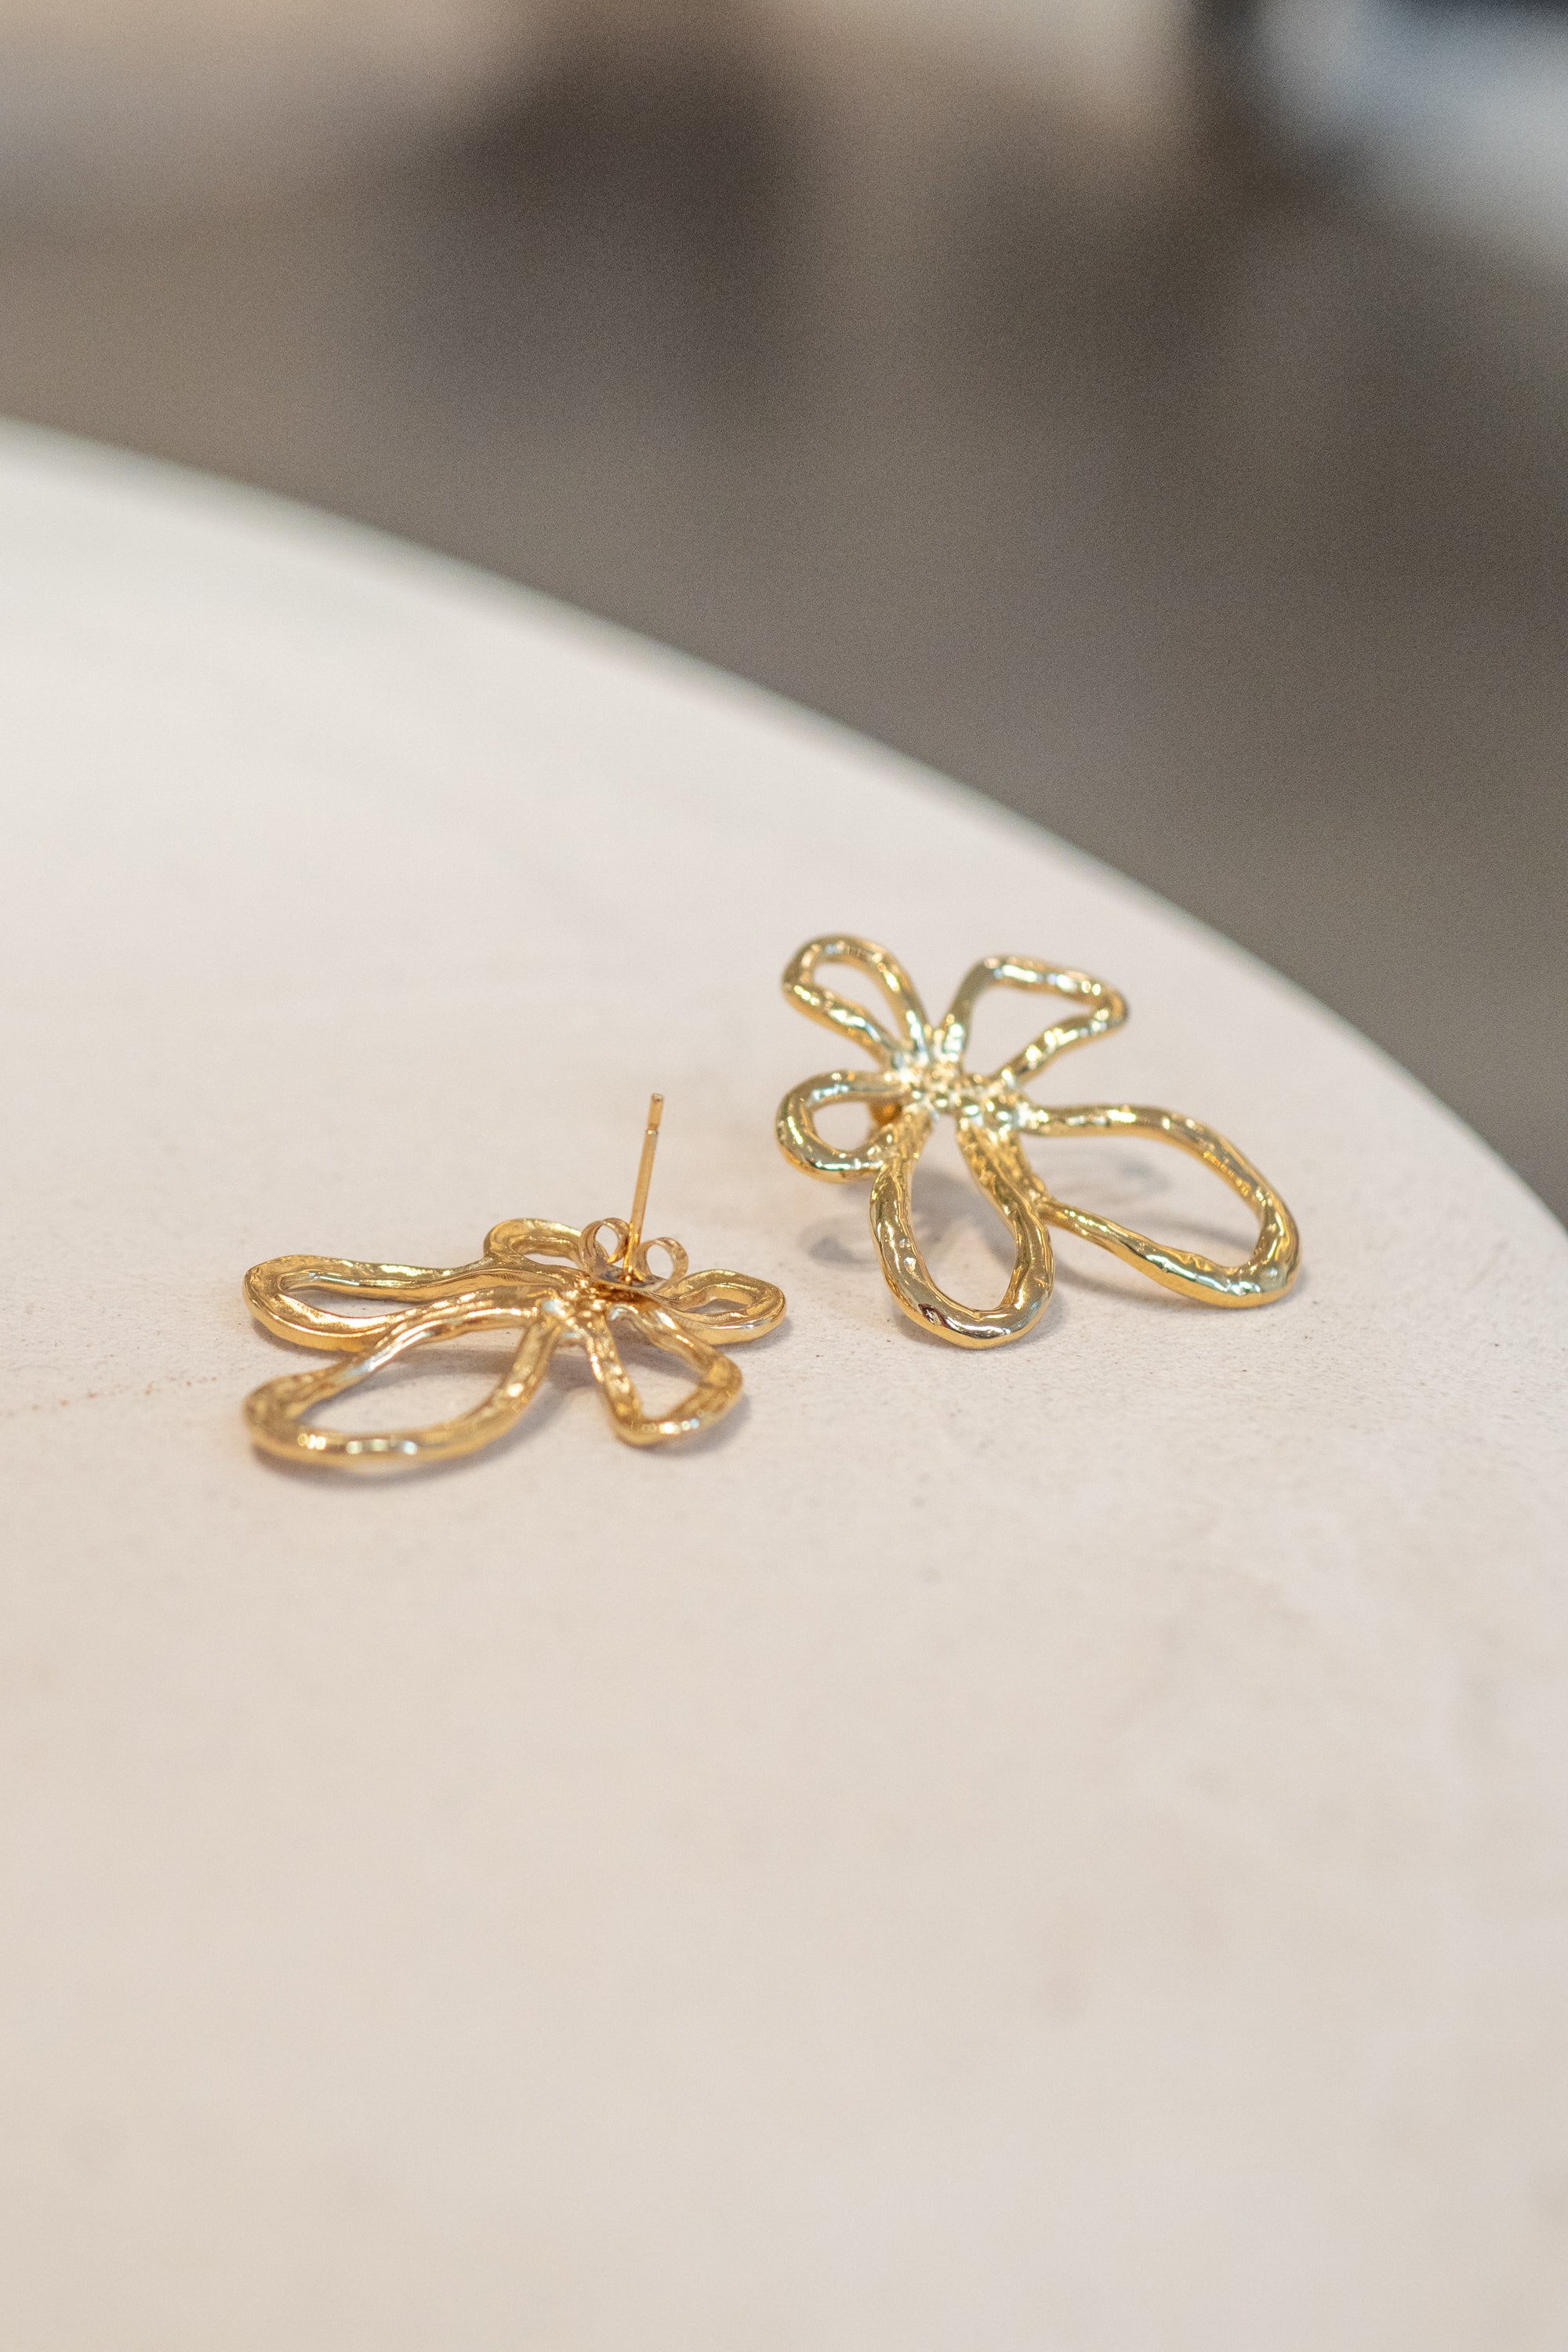 Organic Flower Earrings Stainless Steel Gold